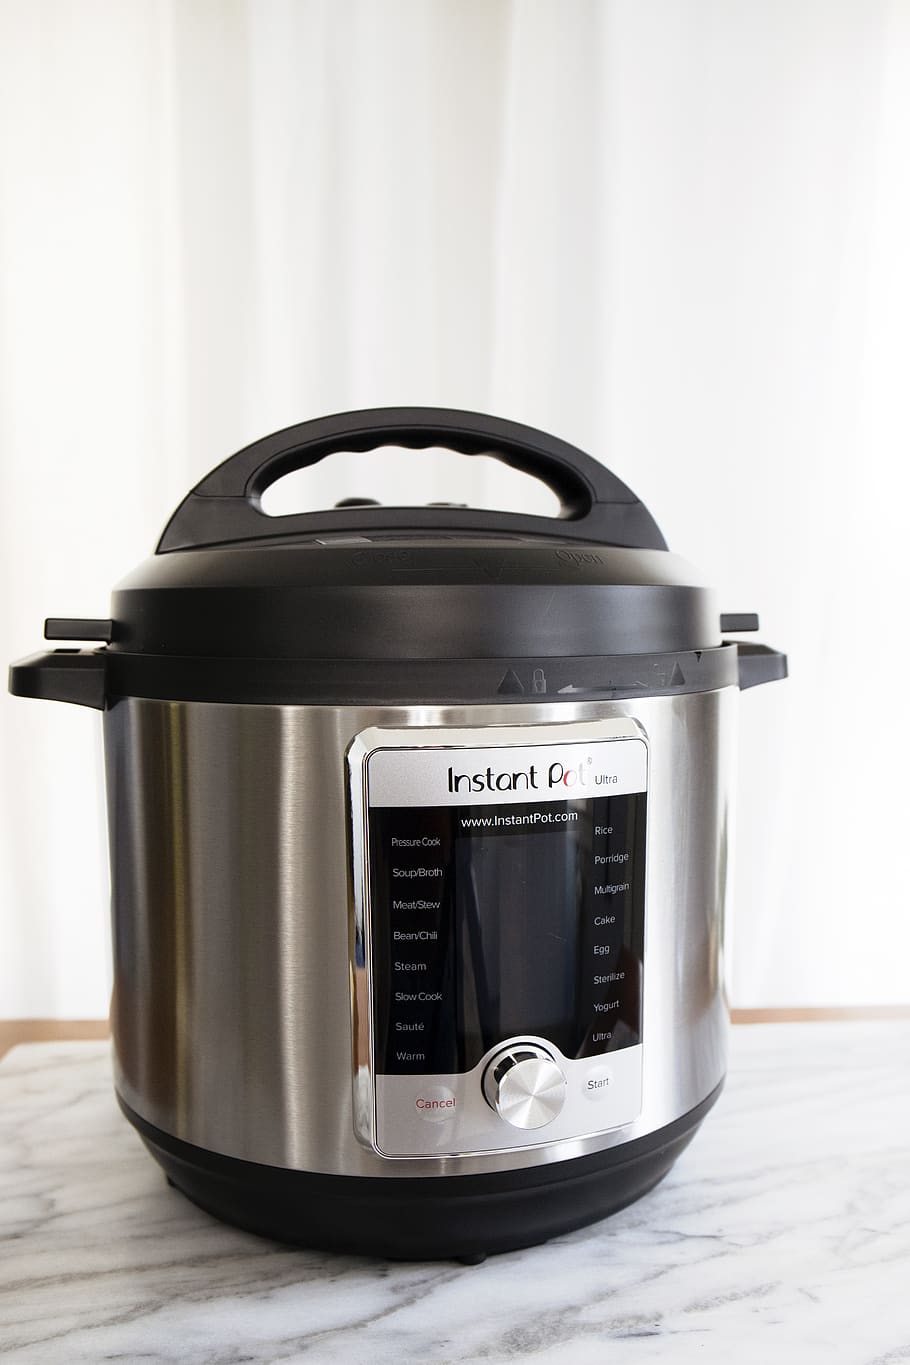 gra yand black rice cooker, appliance, slow cooker, mixer, steamer, HD wallpaper